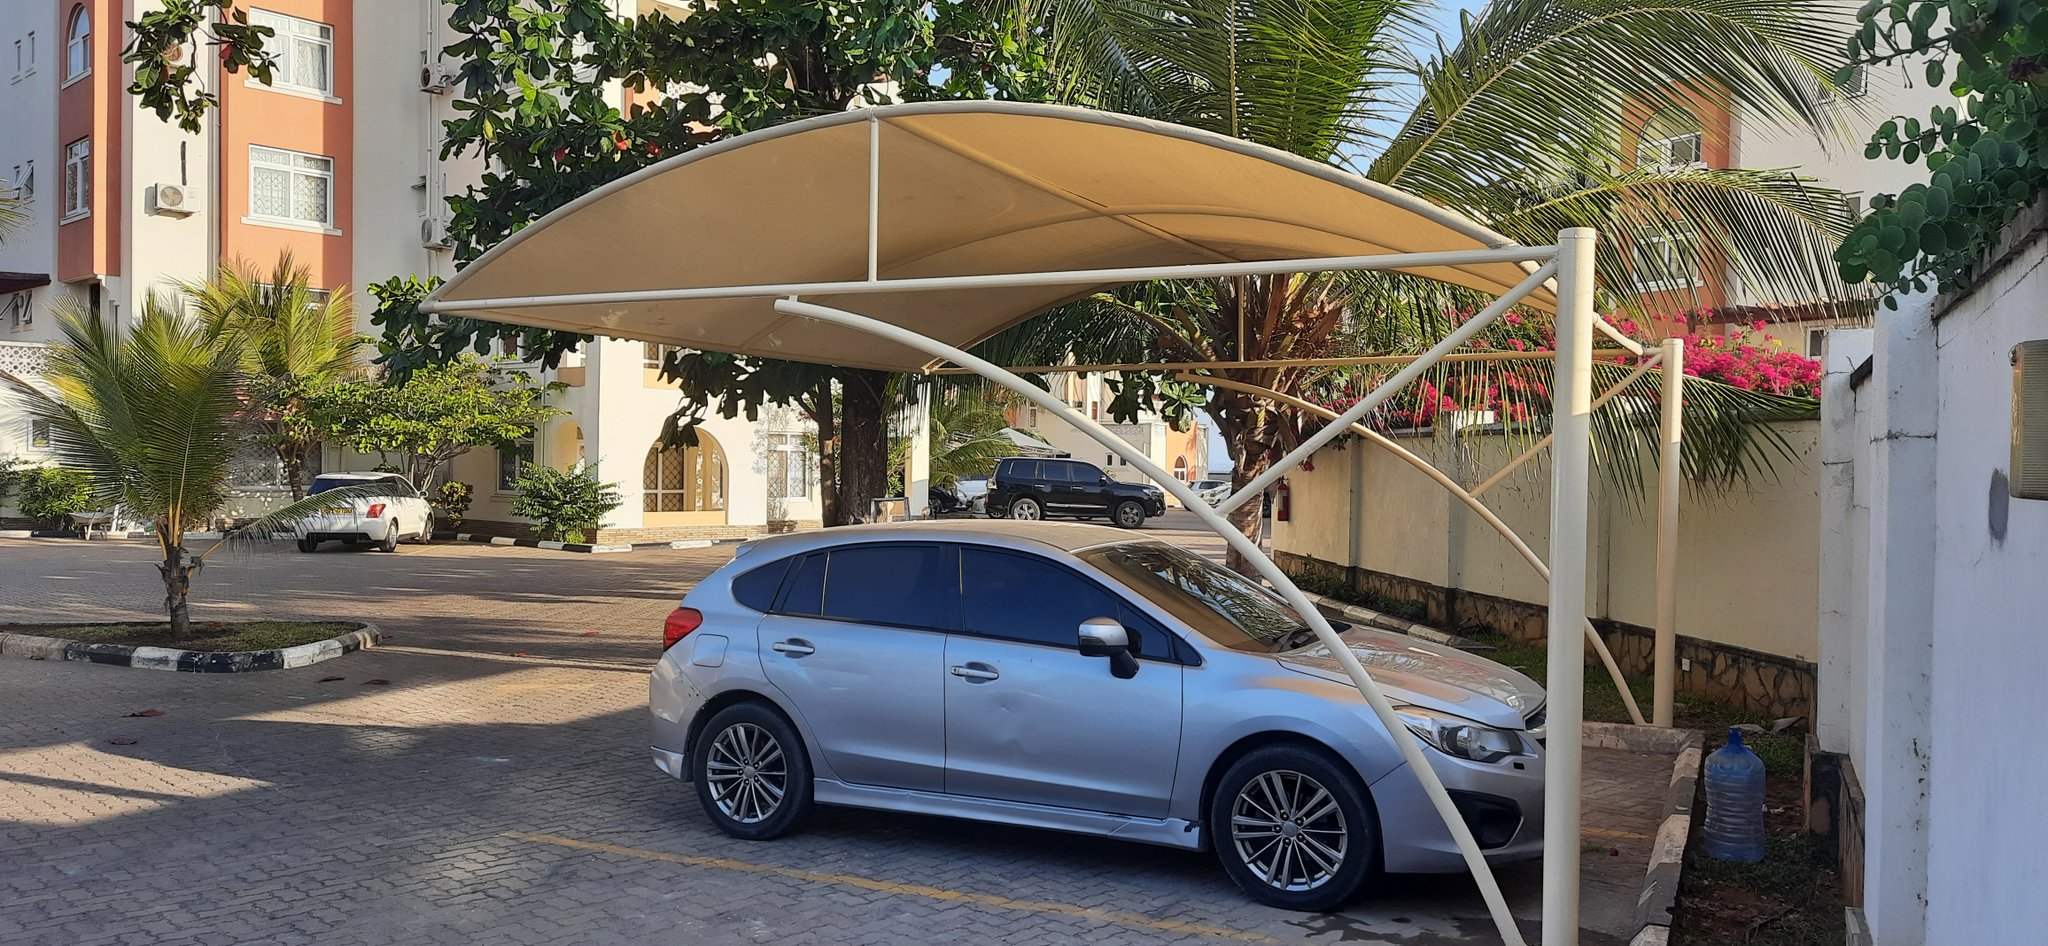 Car Shade-Carport-Parking Shade-Waterproof Shade-Shadenet Canopy-Sun Shade-Car Wash Shade